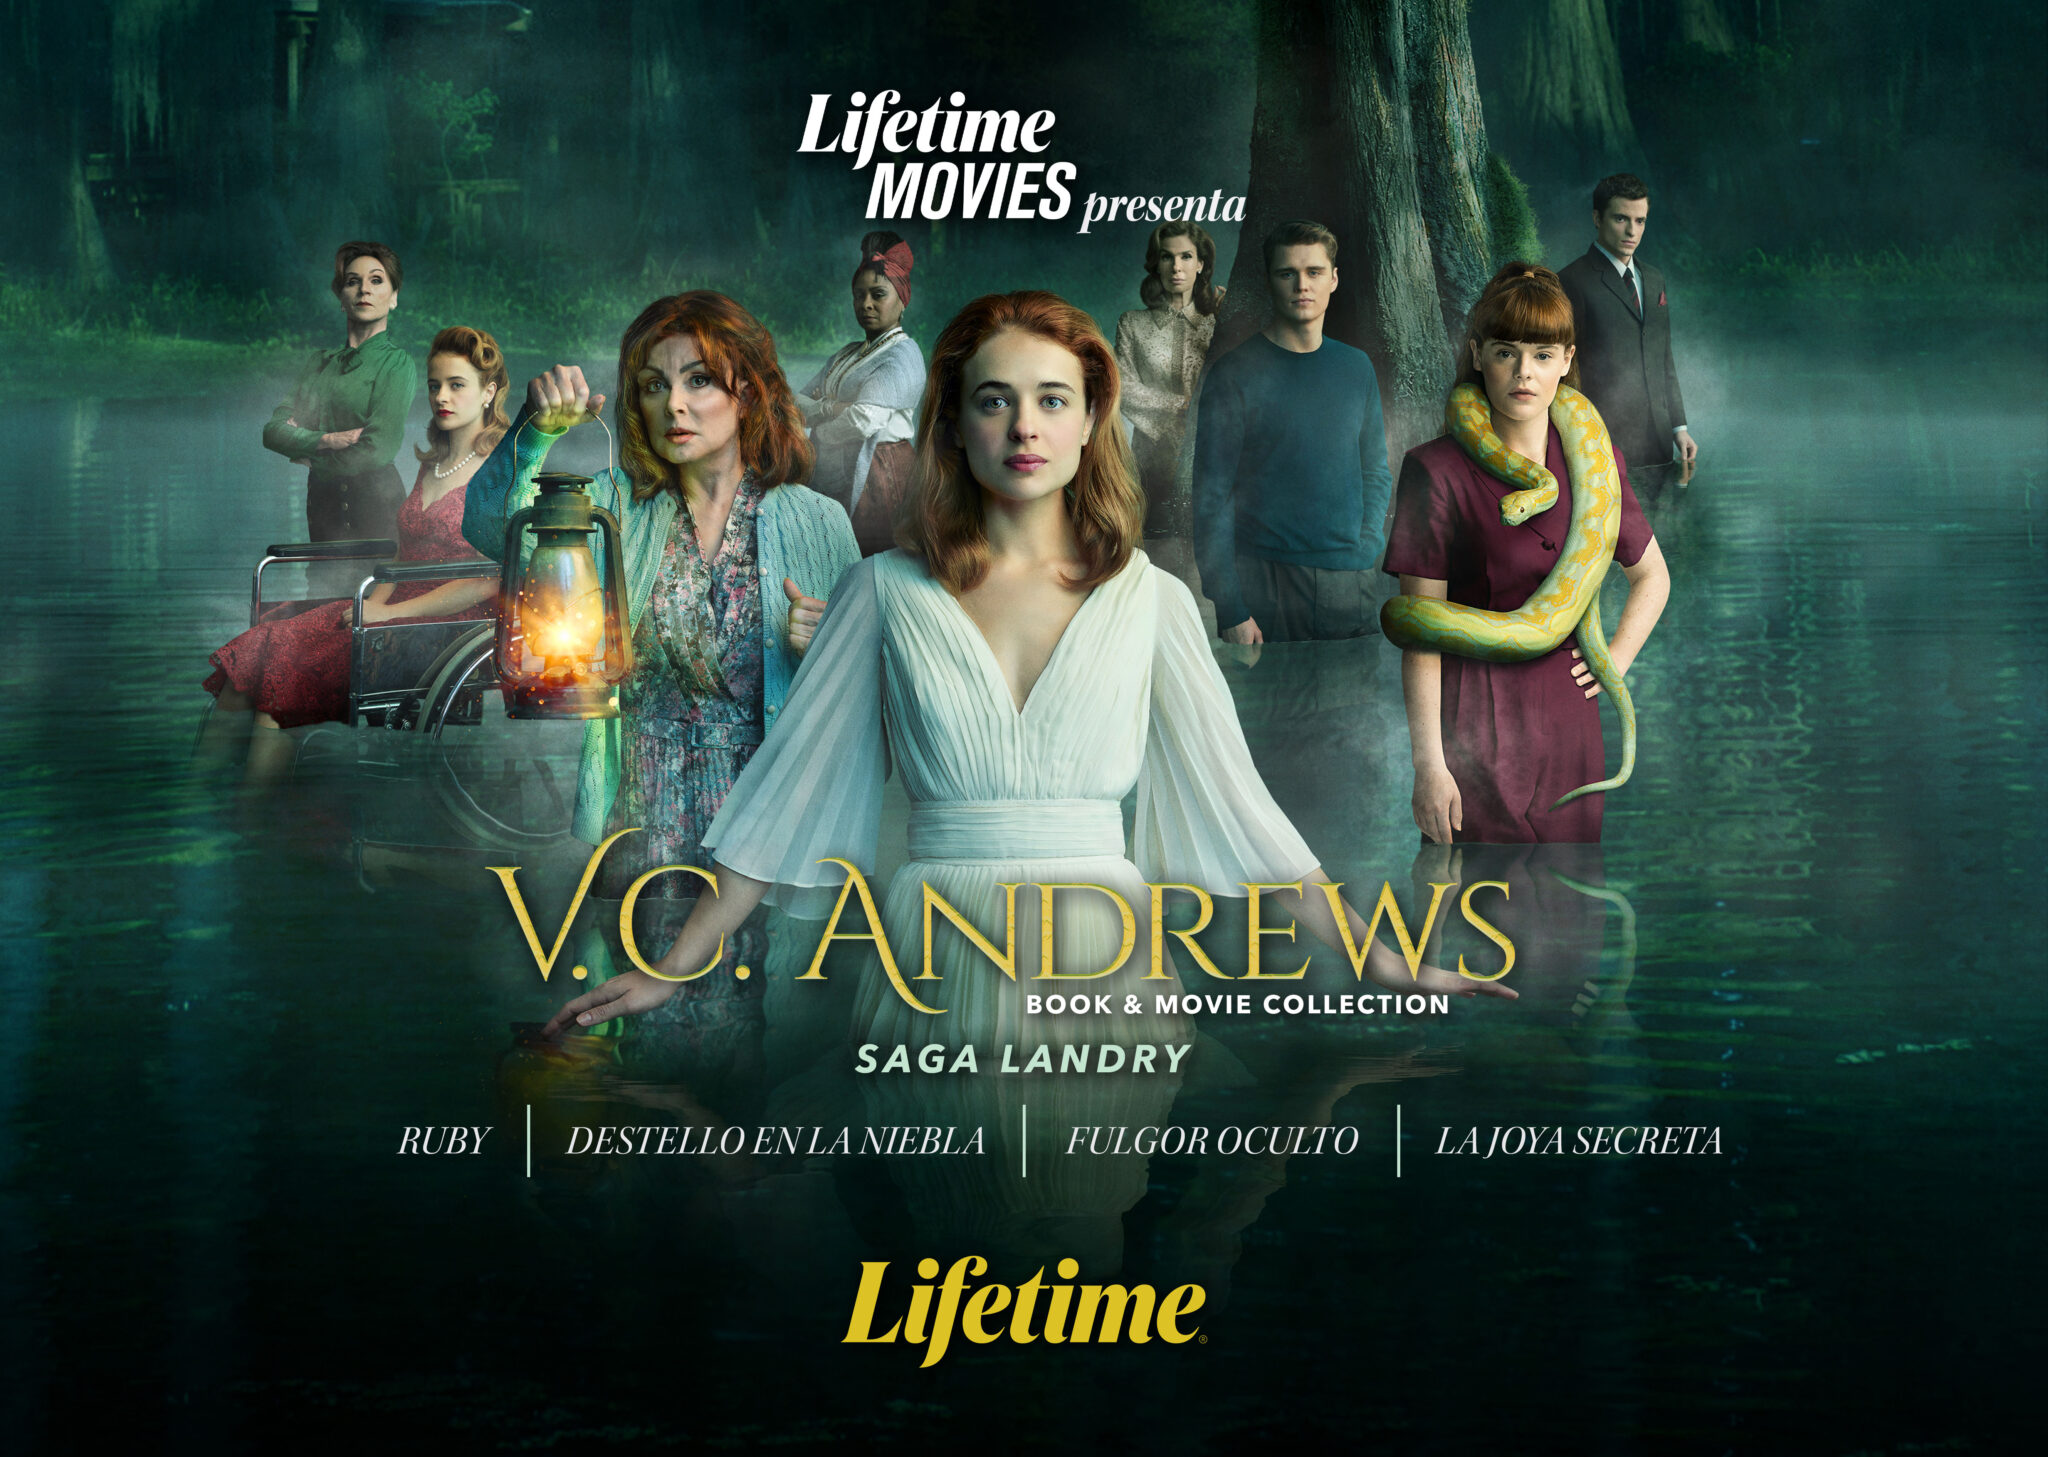 Lifetime Movies presenta “V.C. Andrews”, una exclusiva colección como